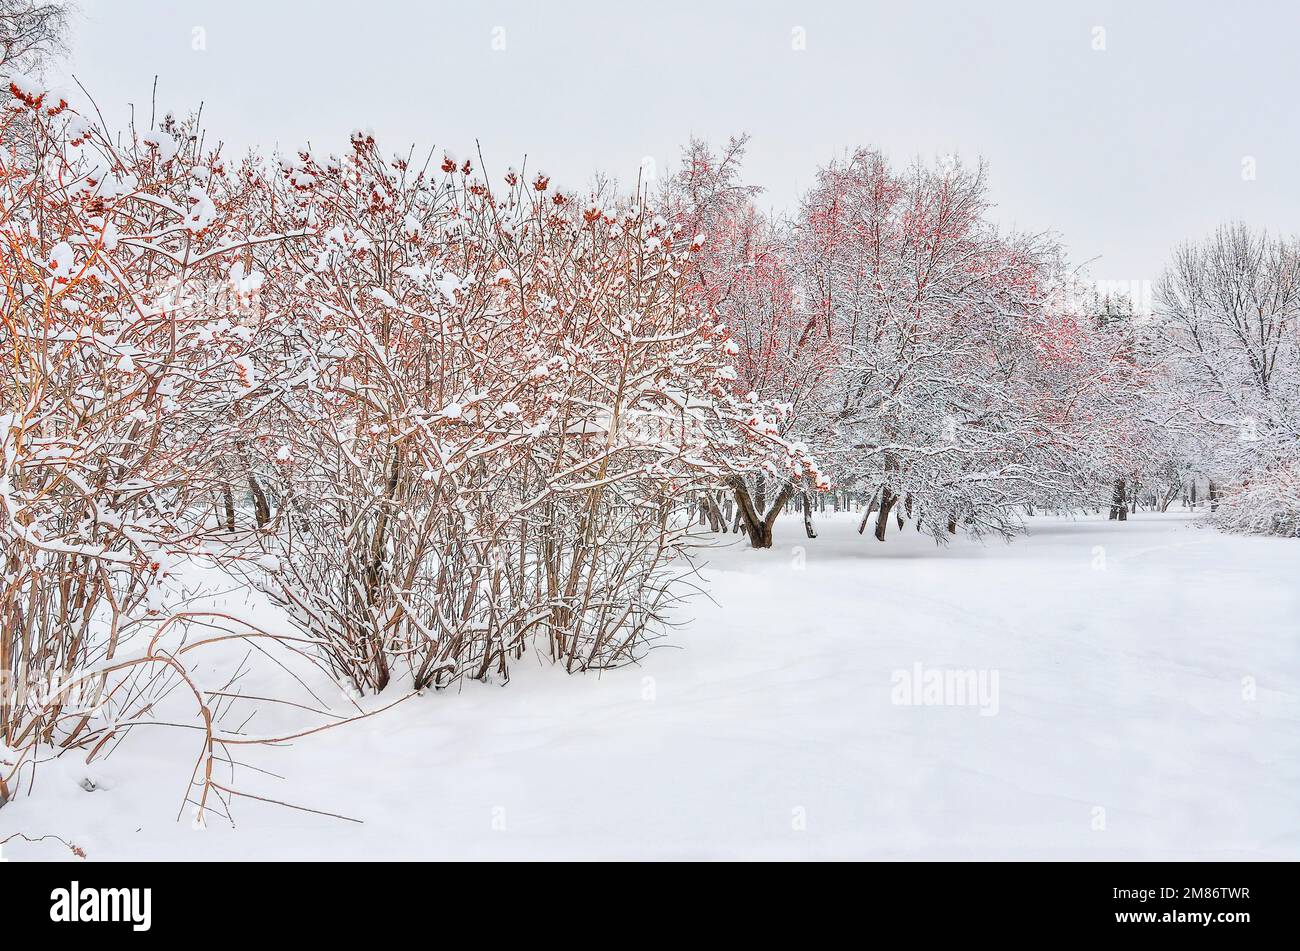 Winterpark mit verschneitem Stadtpark. Schneebedeckter wilder Apfelbaum mit roten Früchten und leuchtenden Büschen auf weissem Schnee unter weißem, bewölktem Himmel. Helle Farben von w Stockfoto